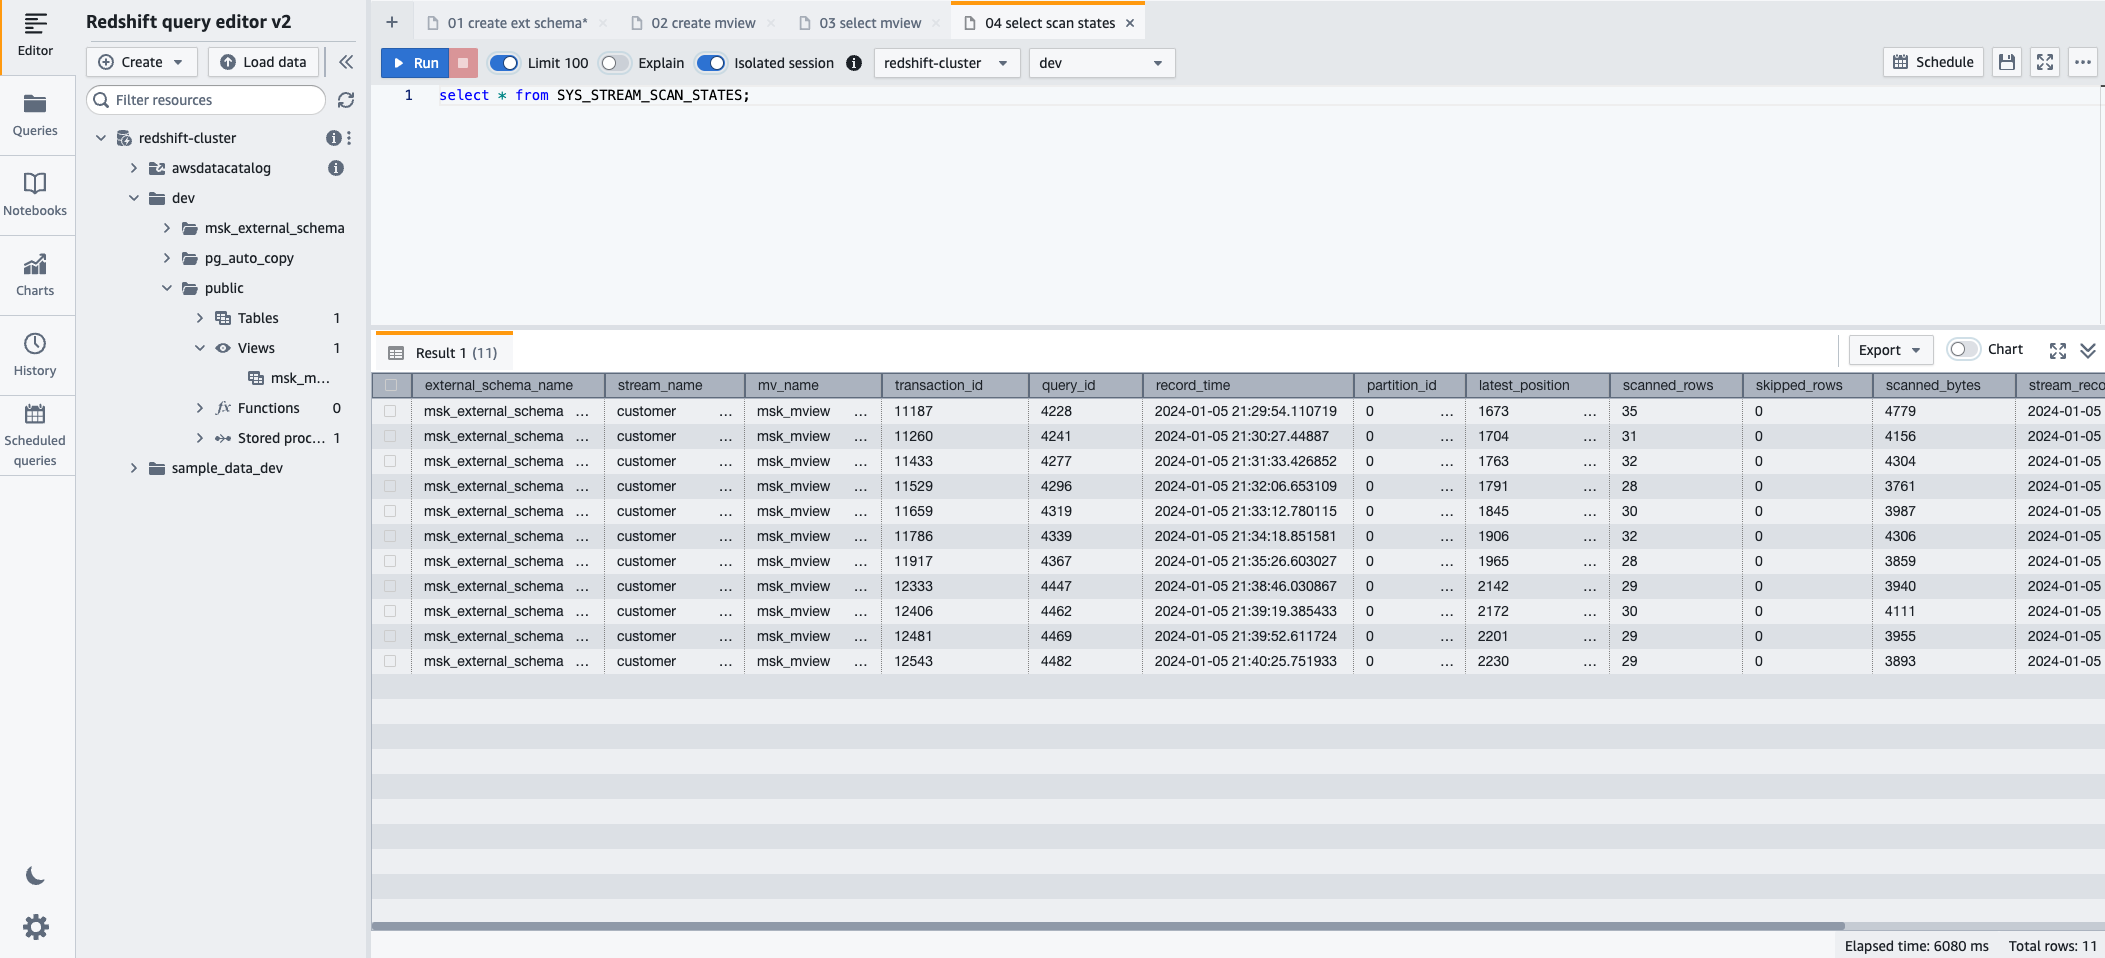 redshift query-editor v2 toont de SQL-instructie die wordt gebruikt om de sys stream scan states monitoring view op te vragen